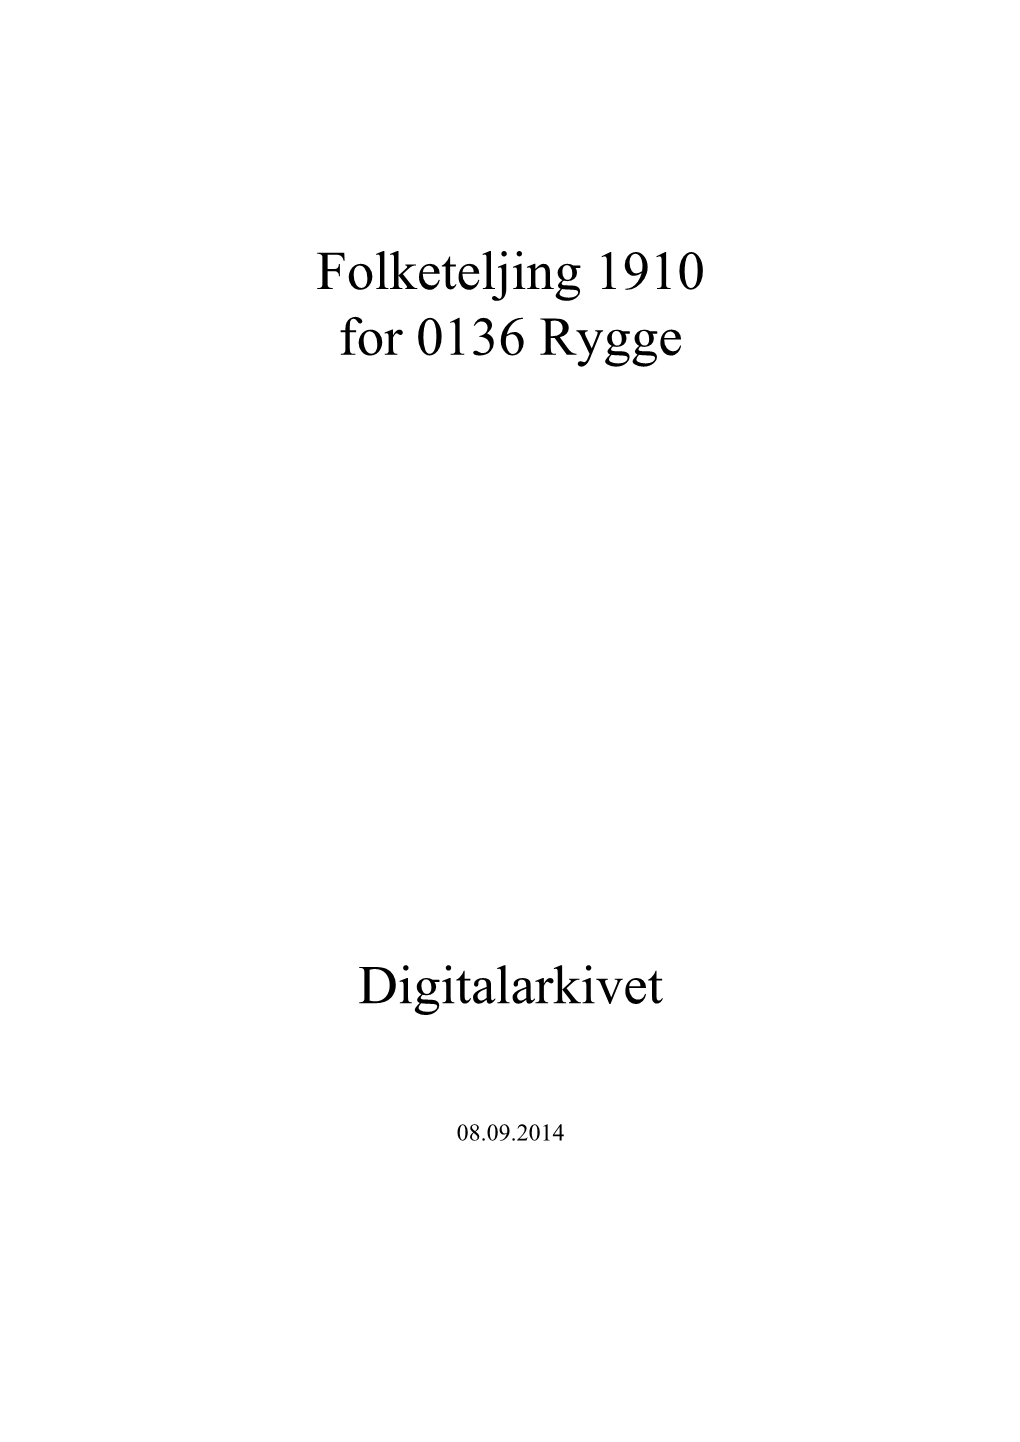 Folketeljing 1910 for 0136 Rygge Digitalarkivet